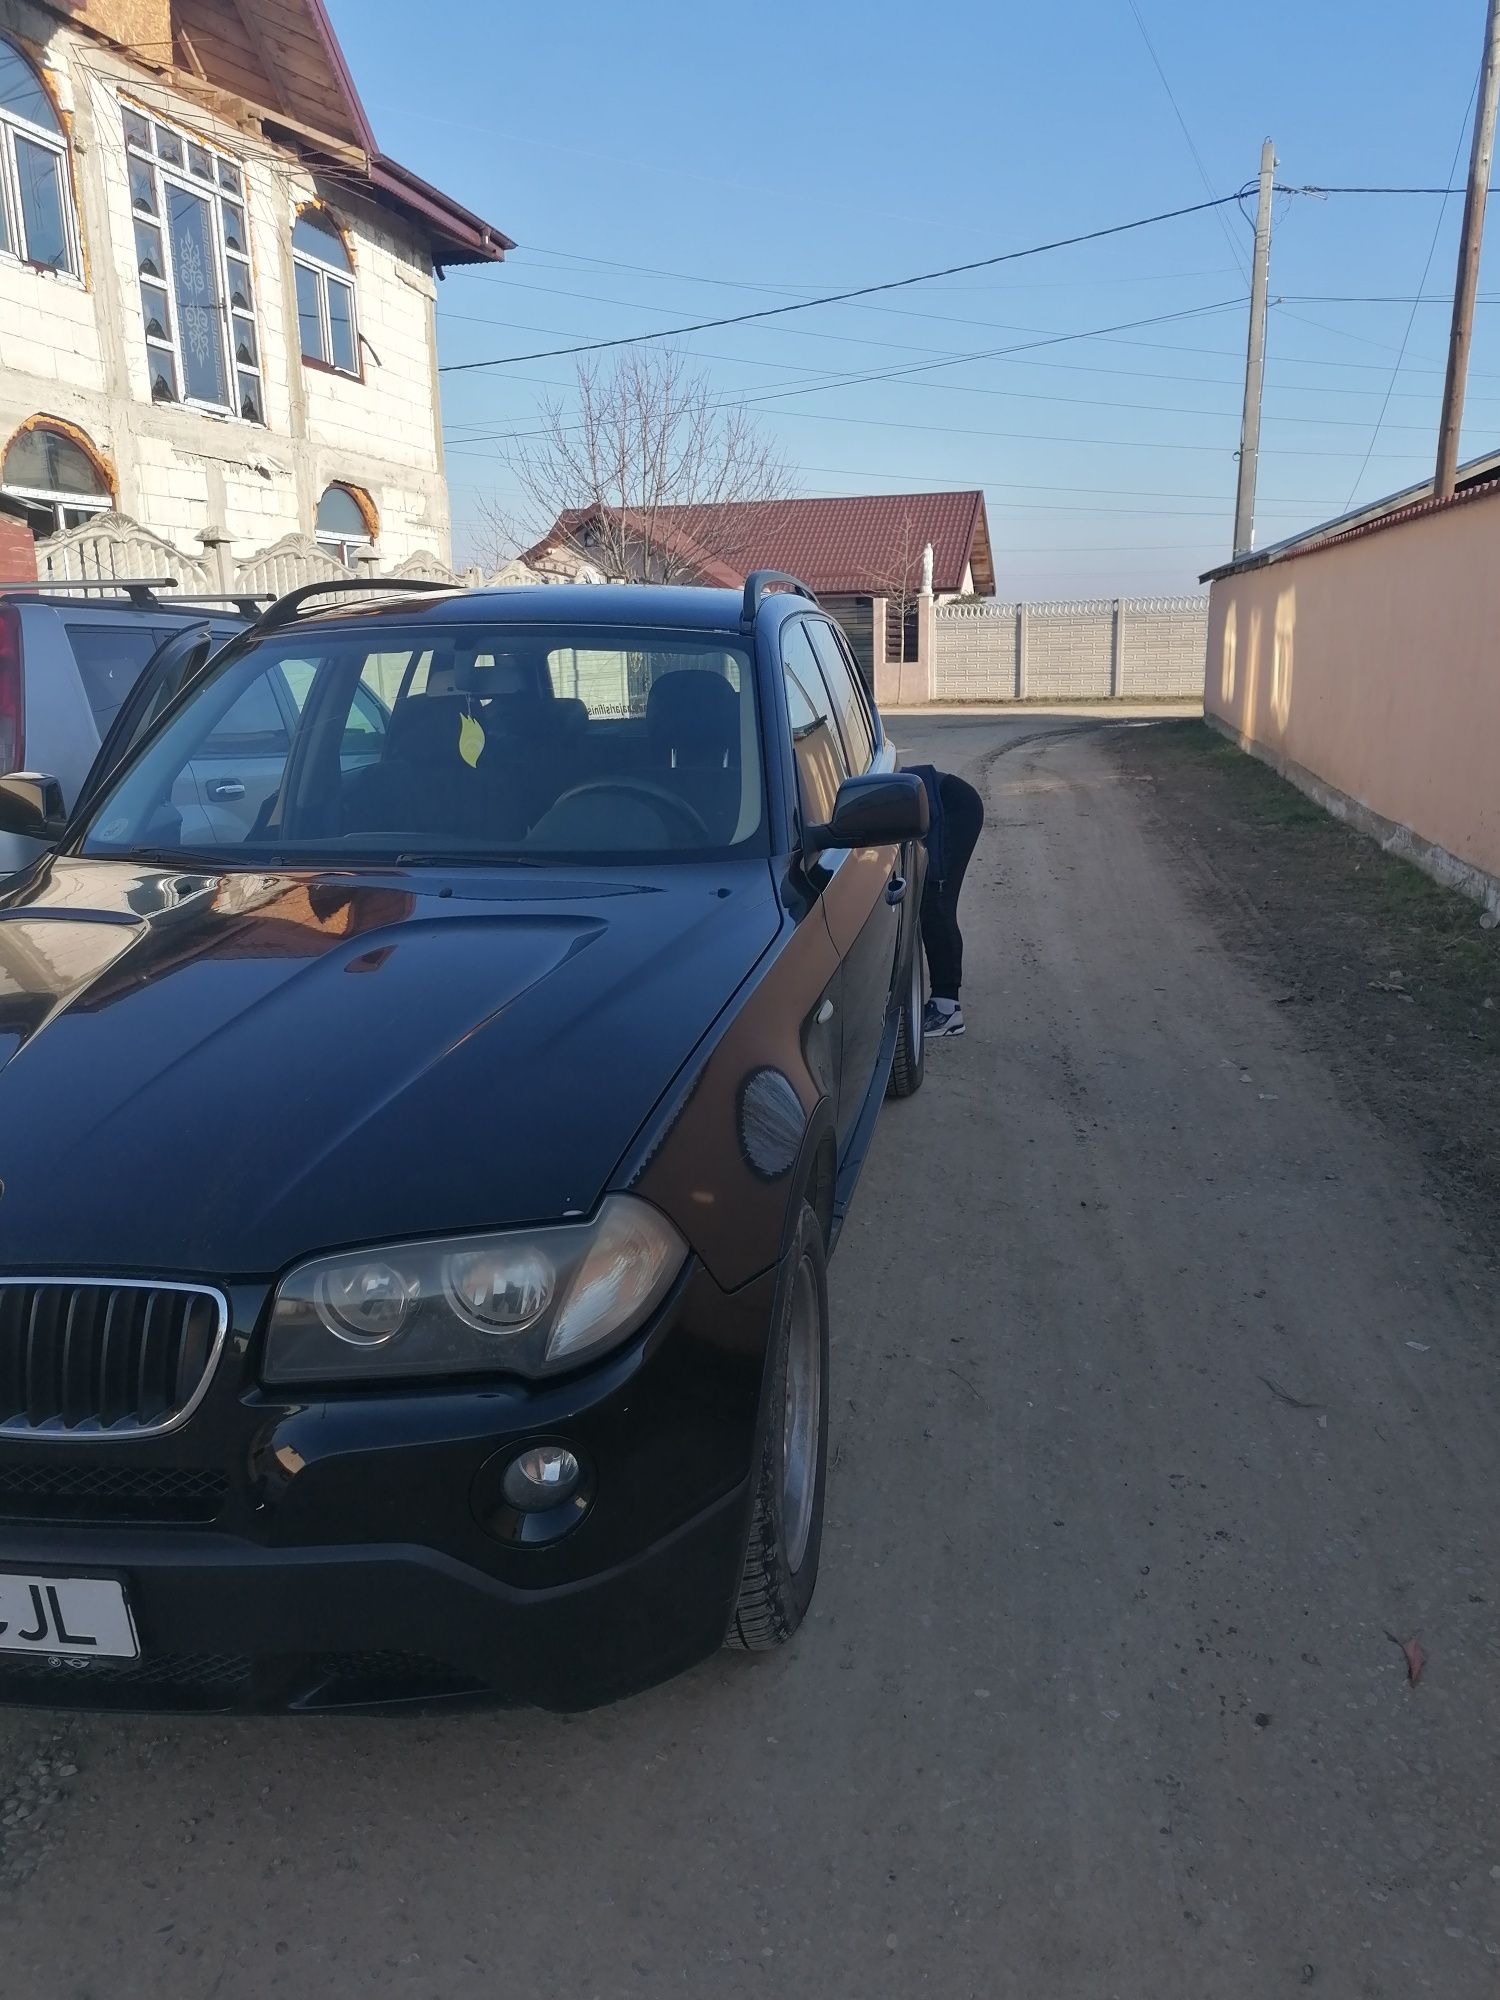 BMW x3 2.0 diesel